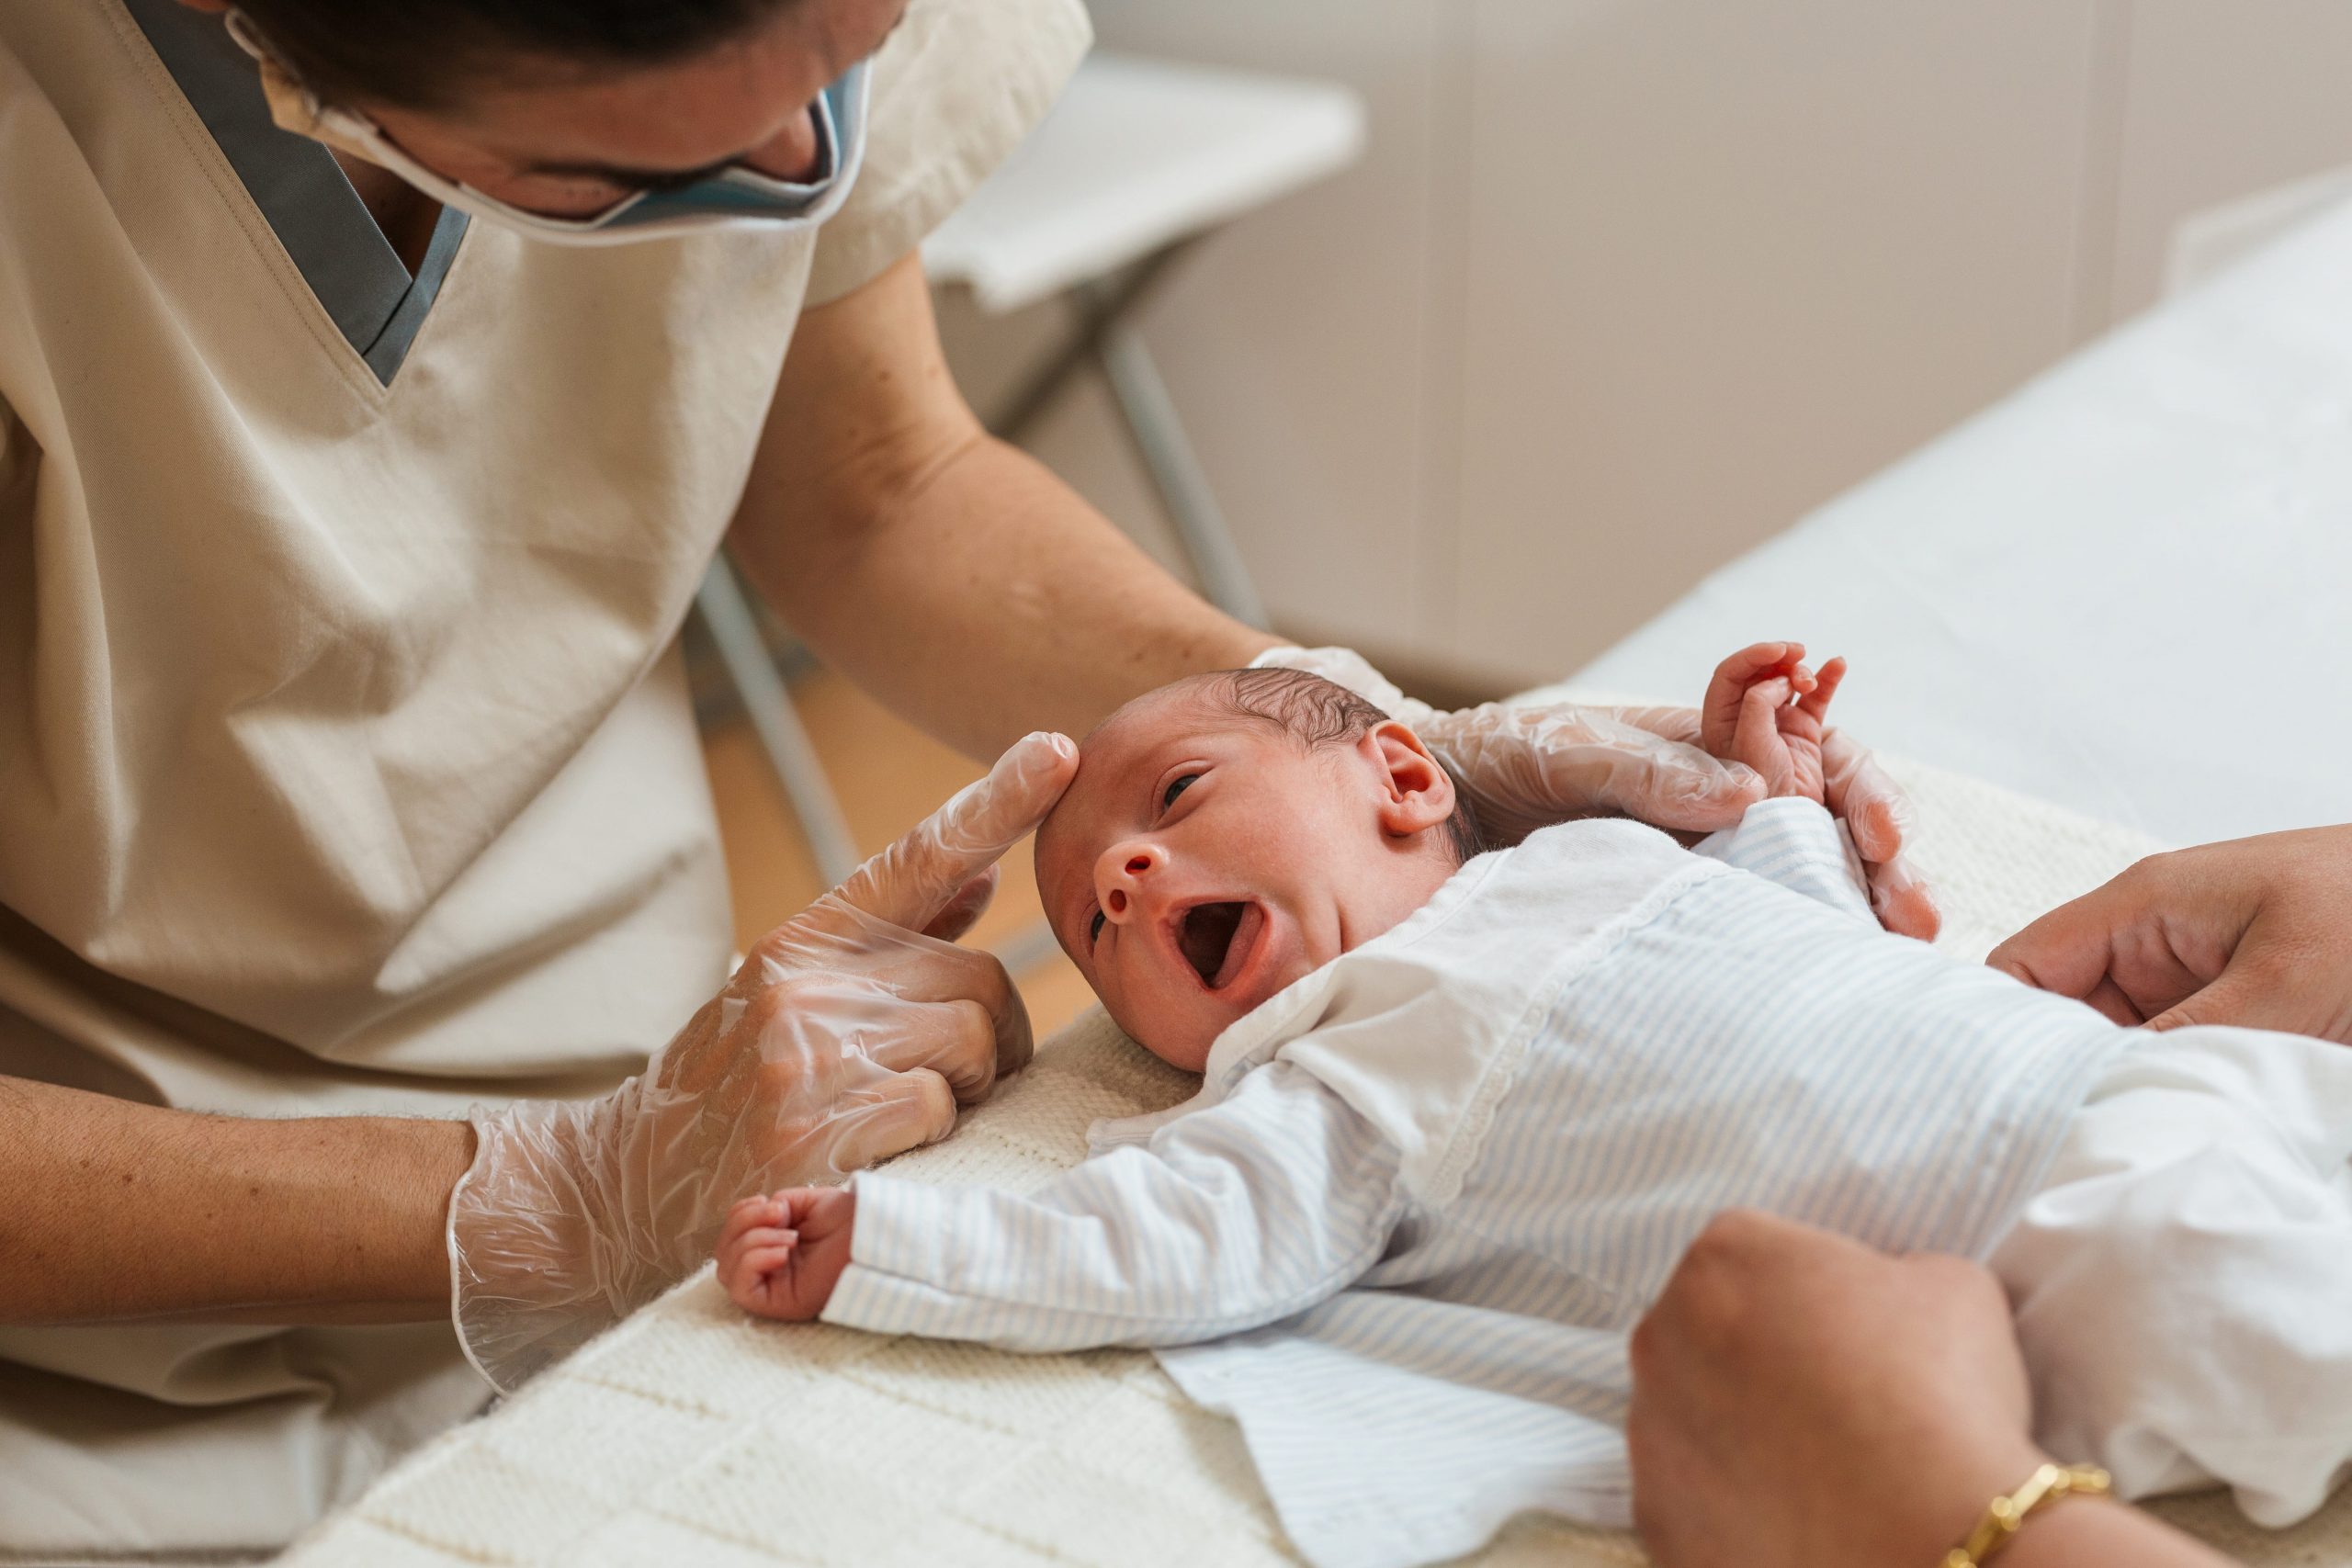 Bebek Memeyi Reddederse Doktora Gidilmeli midir?